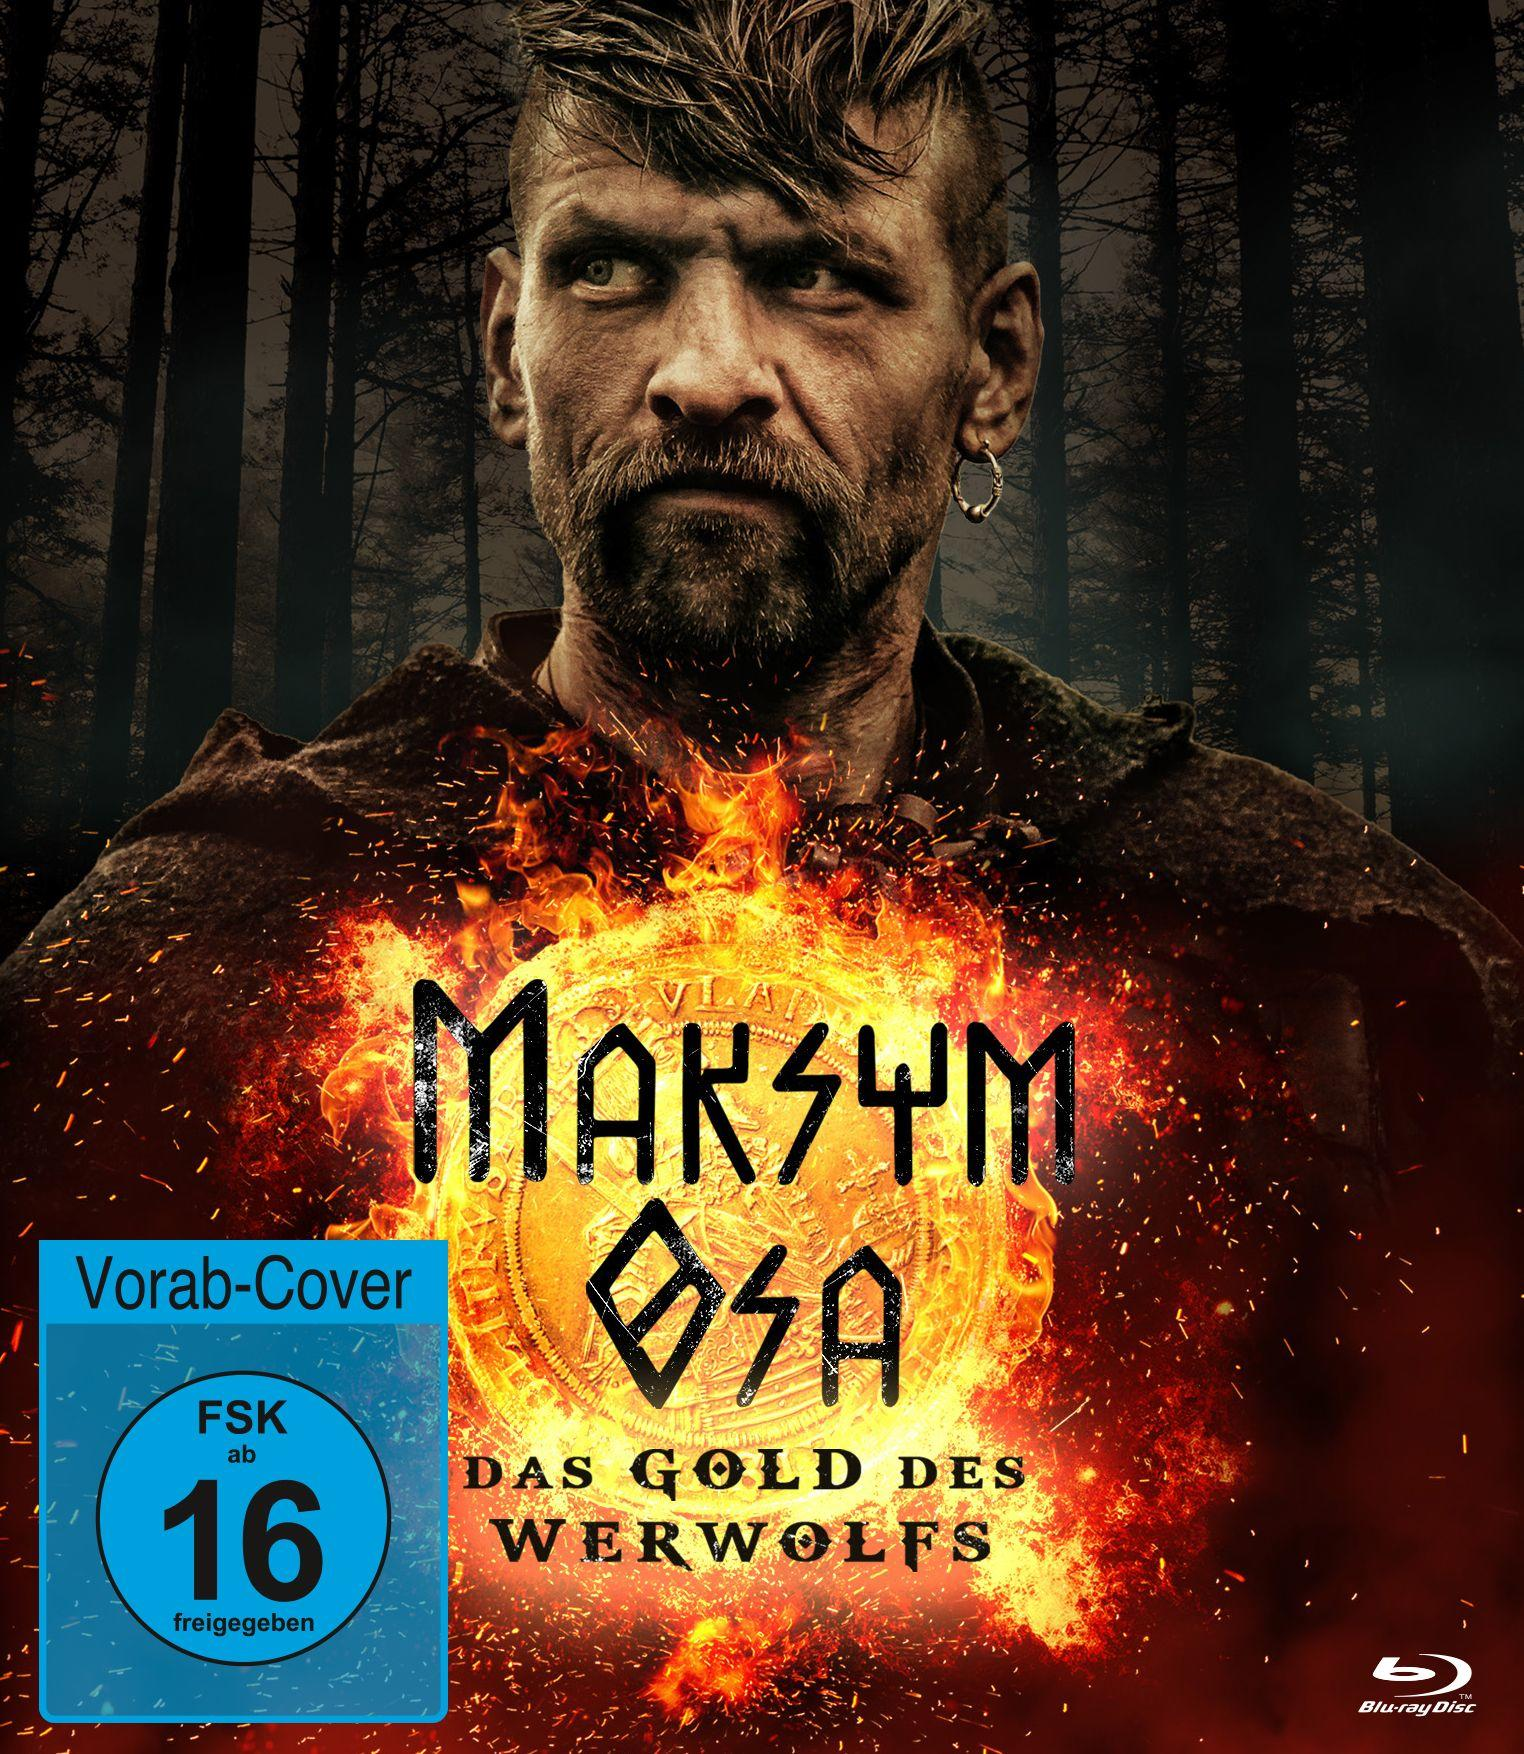 Blu-ray Osa Werwolfs Maksym Das Gold des -